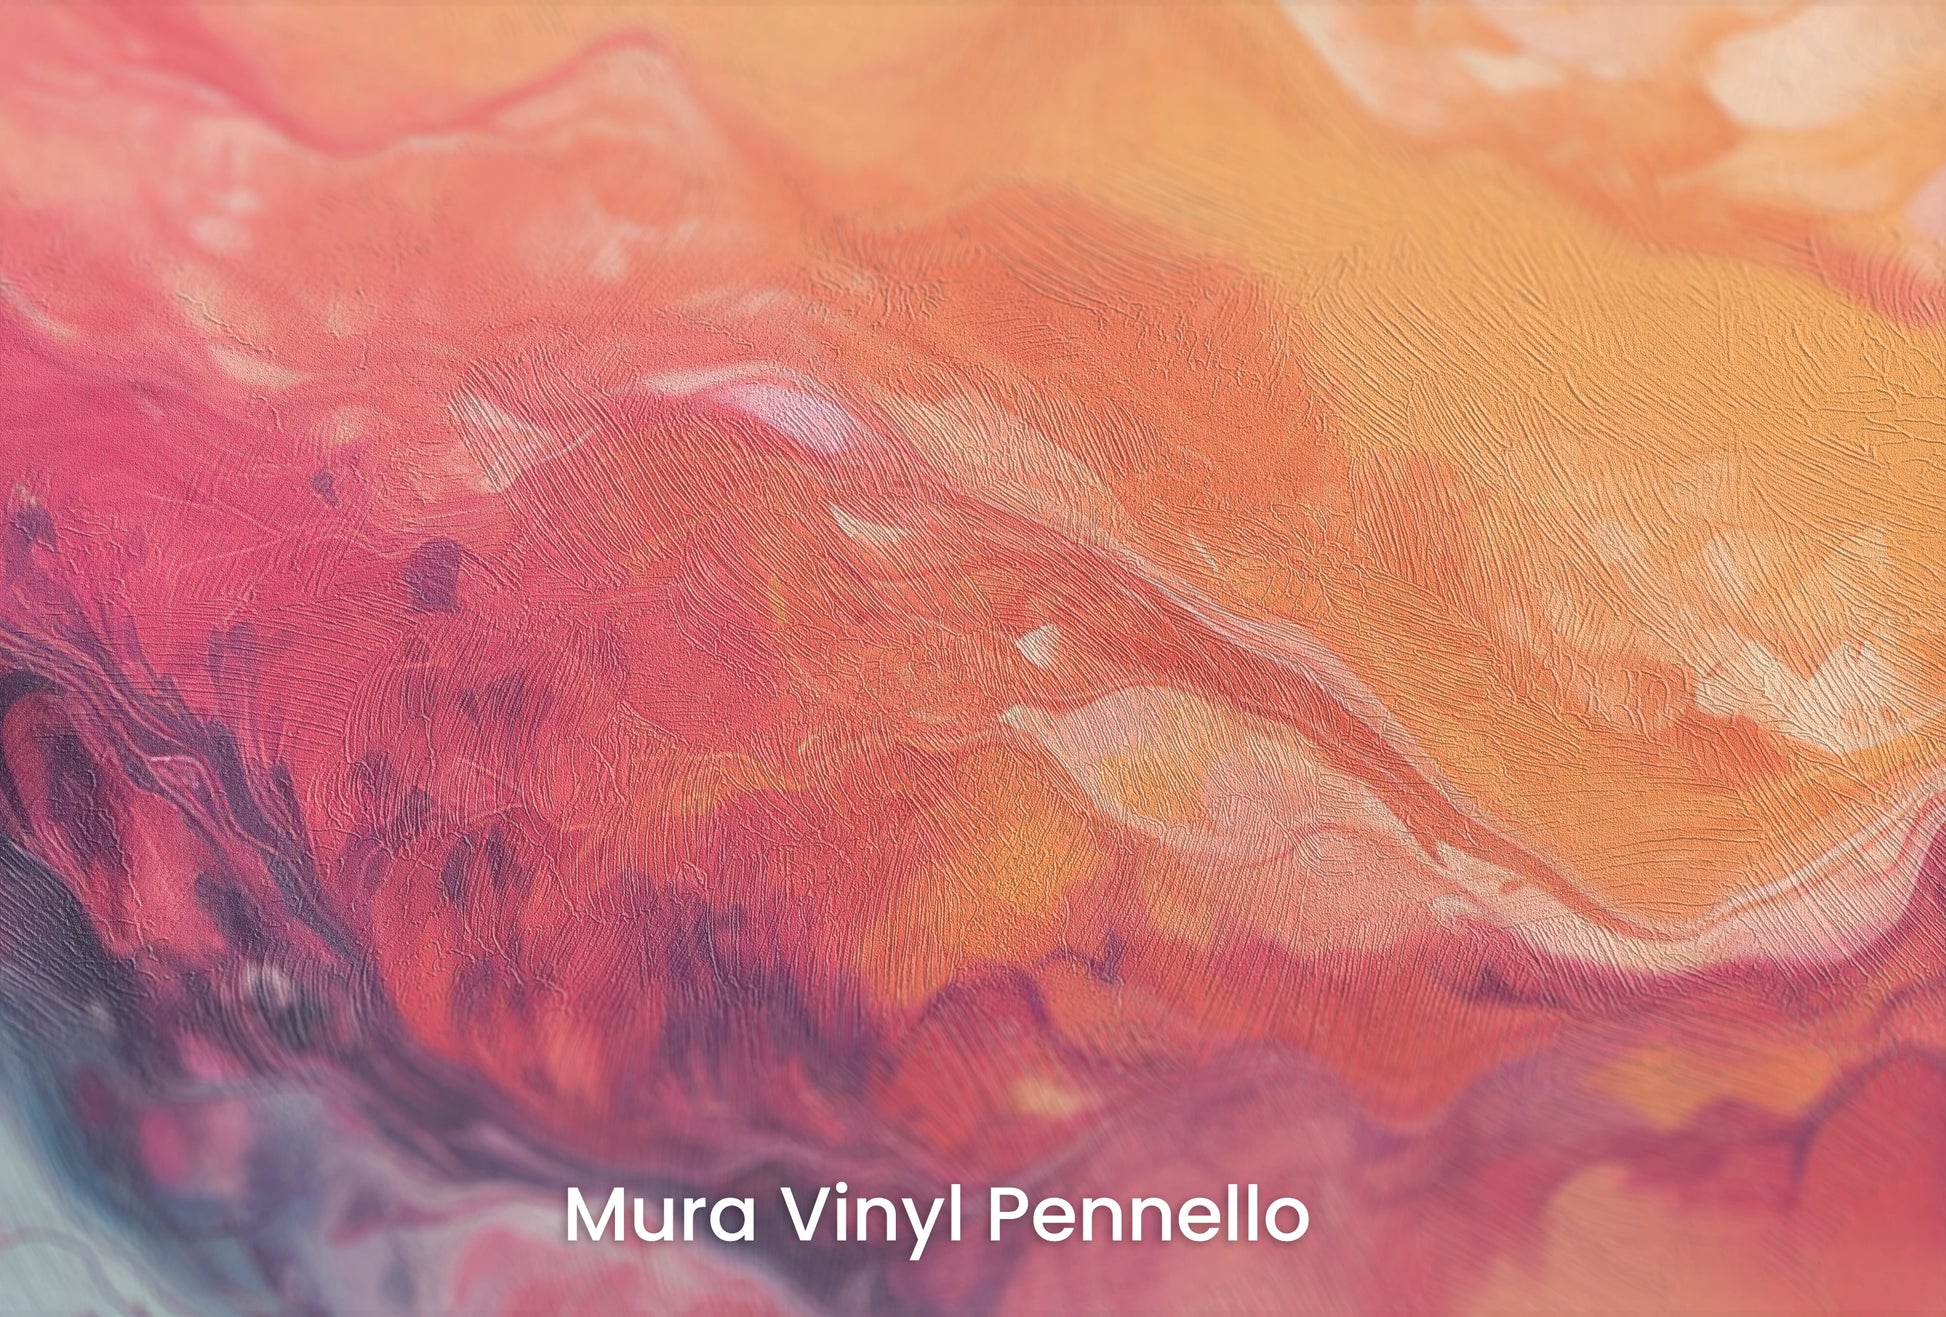 Zbliżenie na artystyczną fototapetę o nazwie Neptune's Flow na podłożu Mura Vinyl Pennello - faktura pociągnięć pędzla malarskiego.